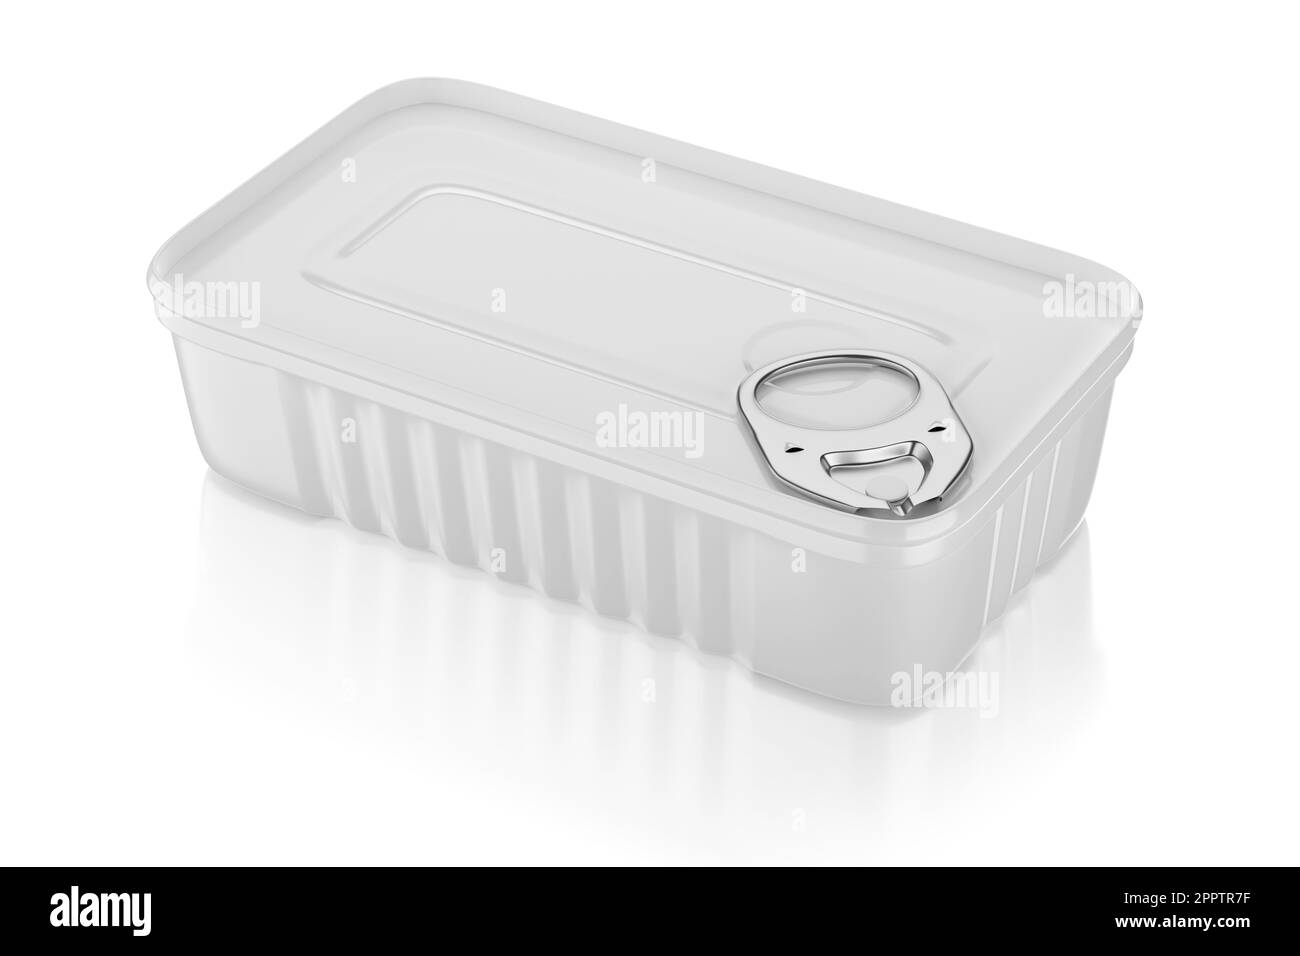 Lattina rettangolare per sardine isolate su sfondo bianco. Illustrazione del rendering 3D. Foto Stock